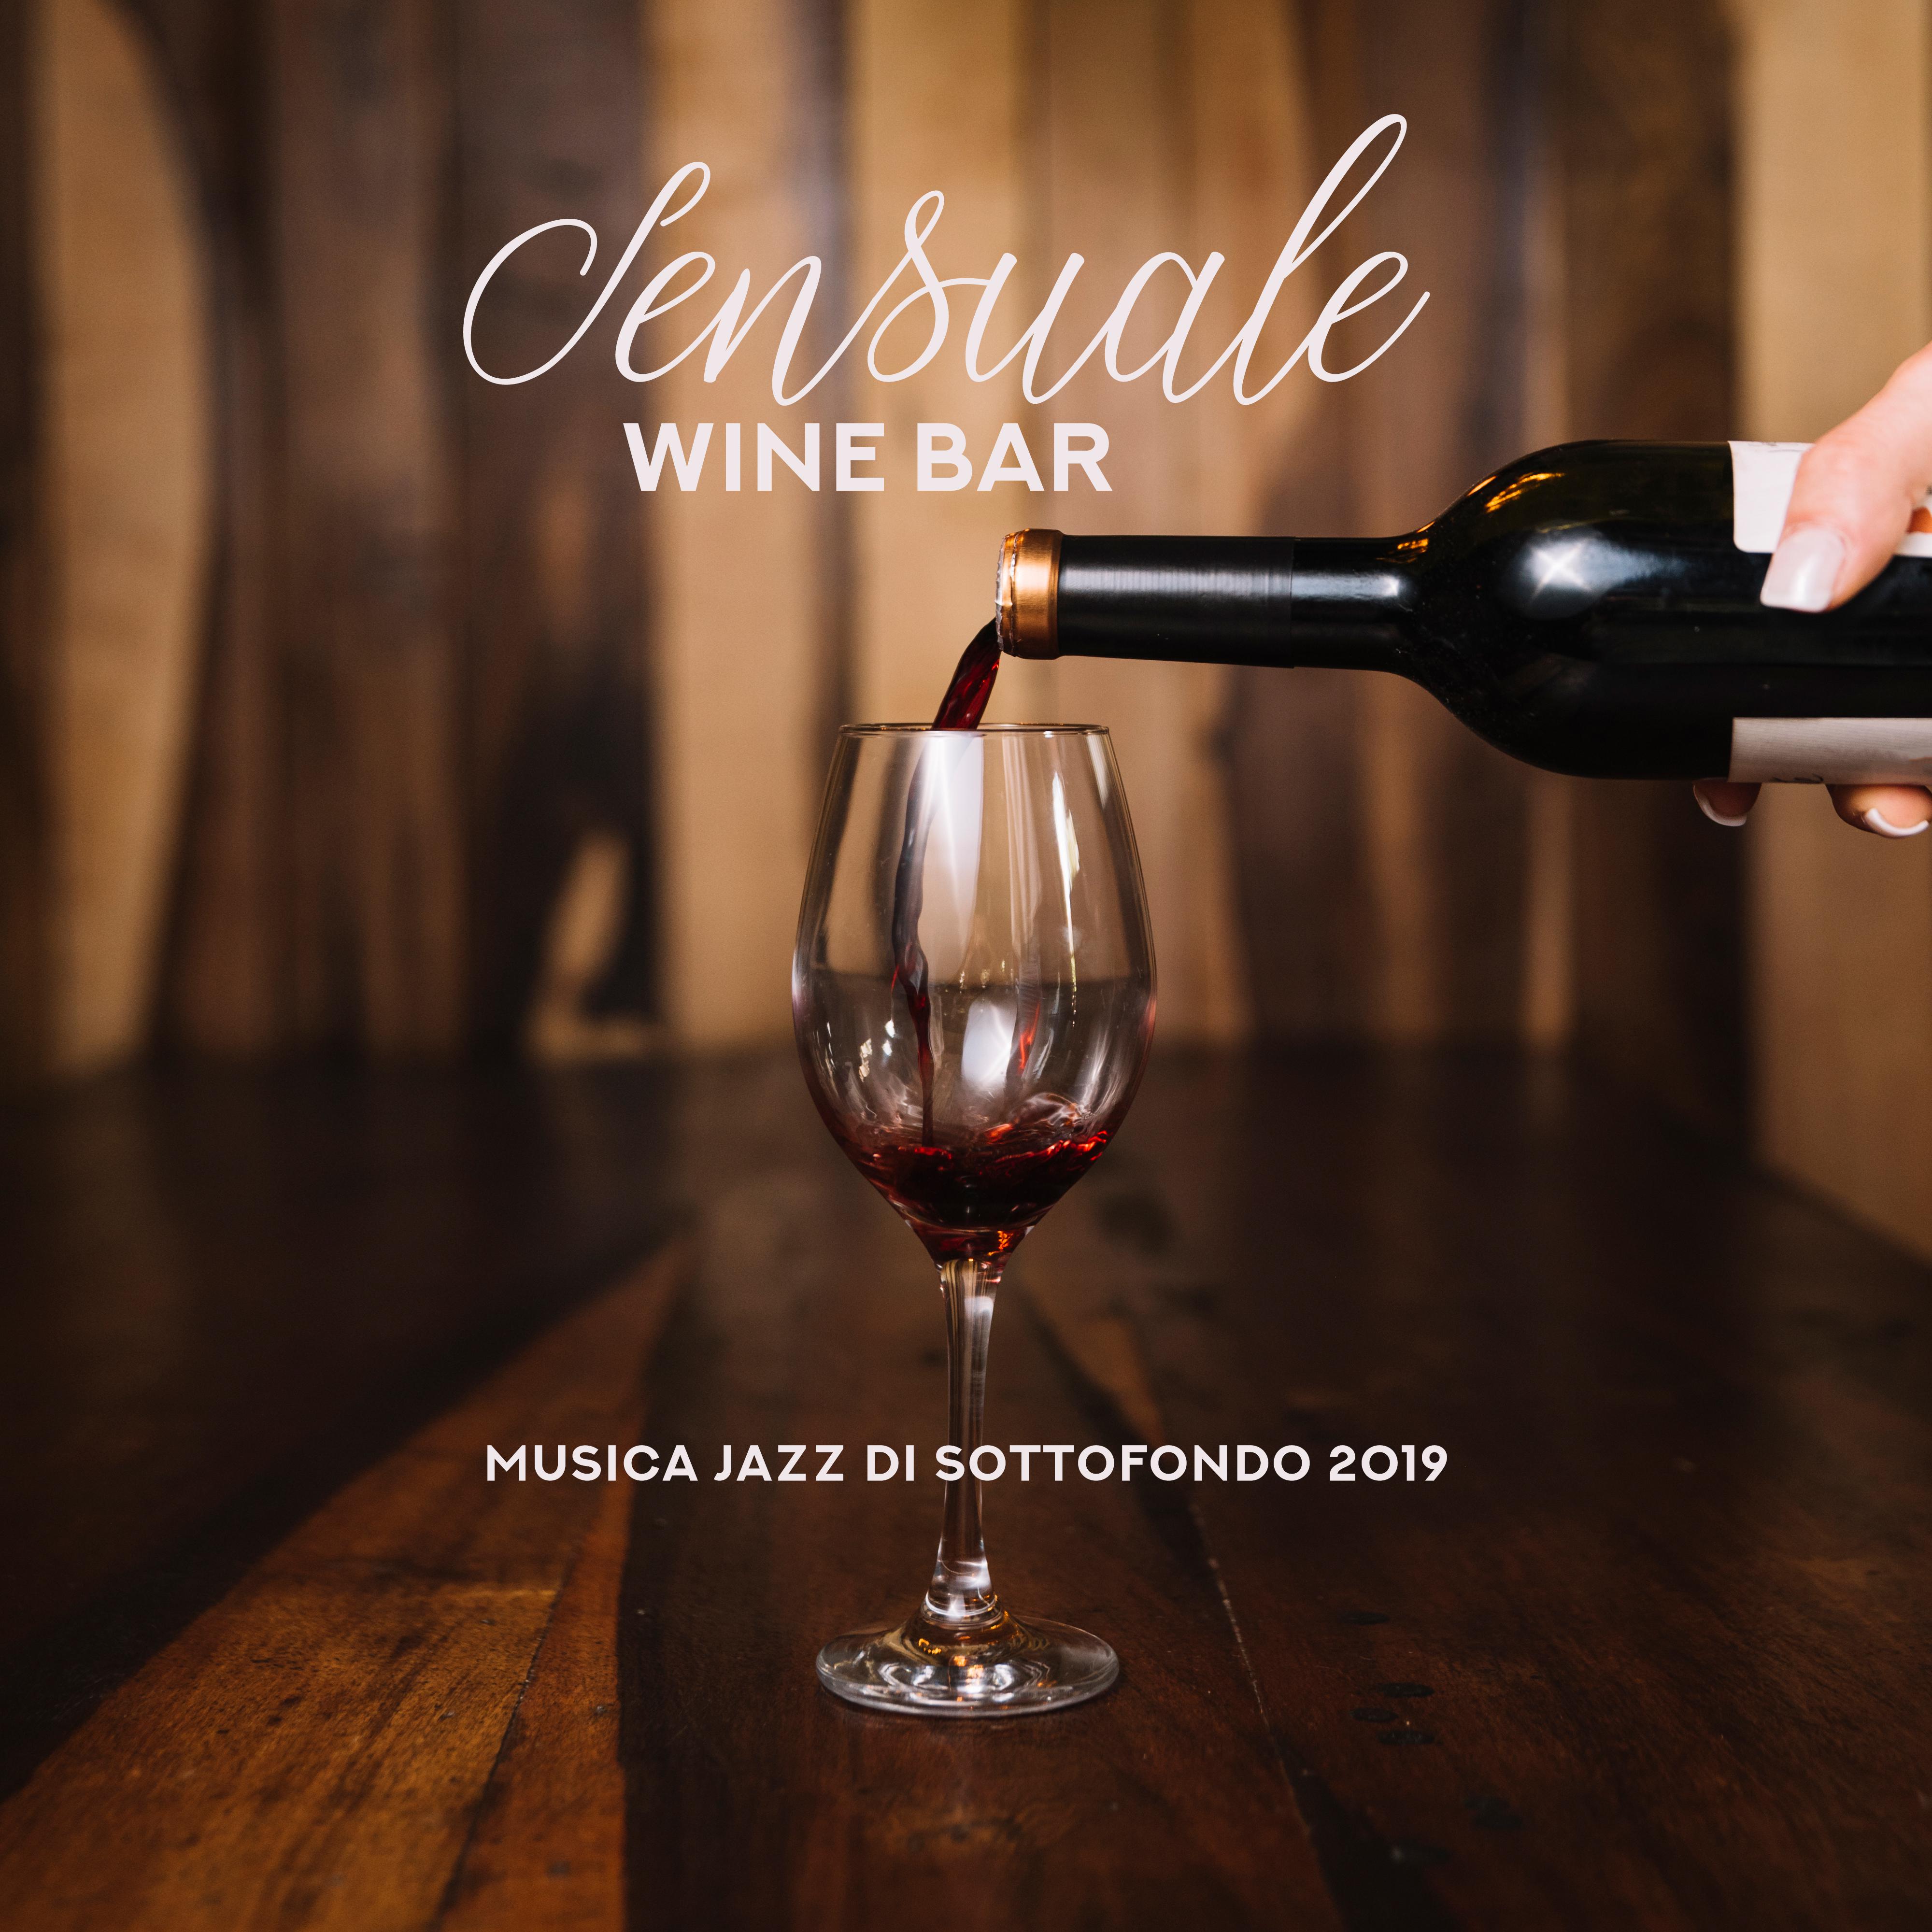 Sensuale Wine Bar Musica Jazz di Sottofondo 2019